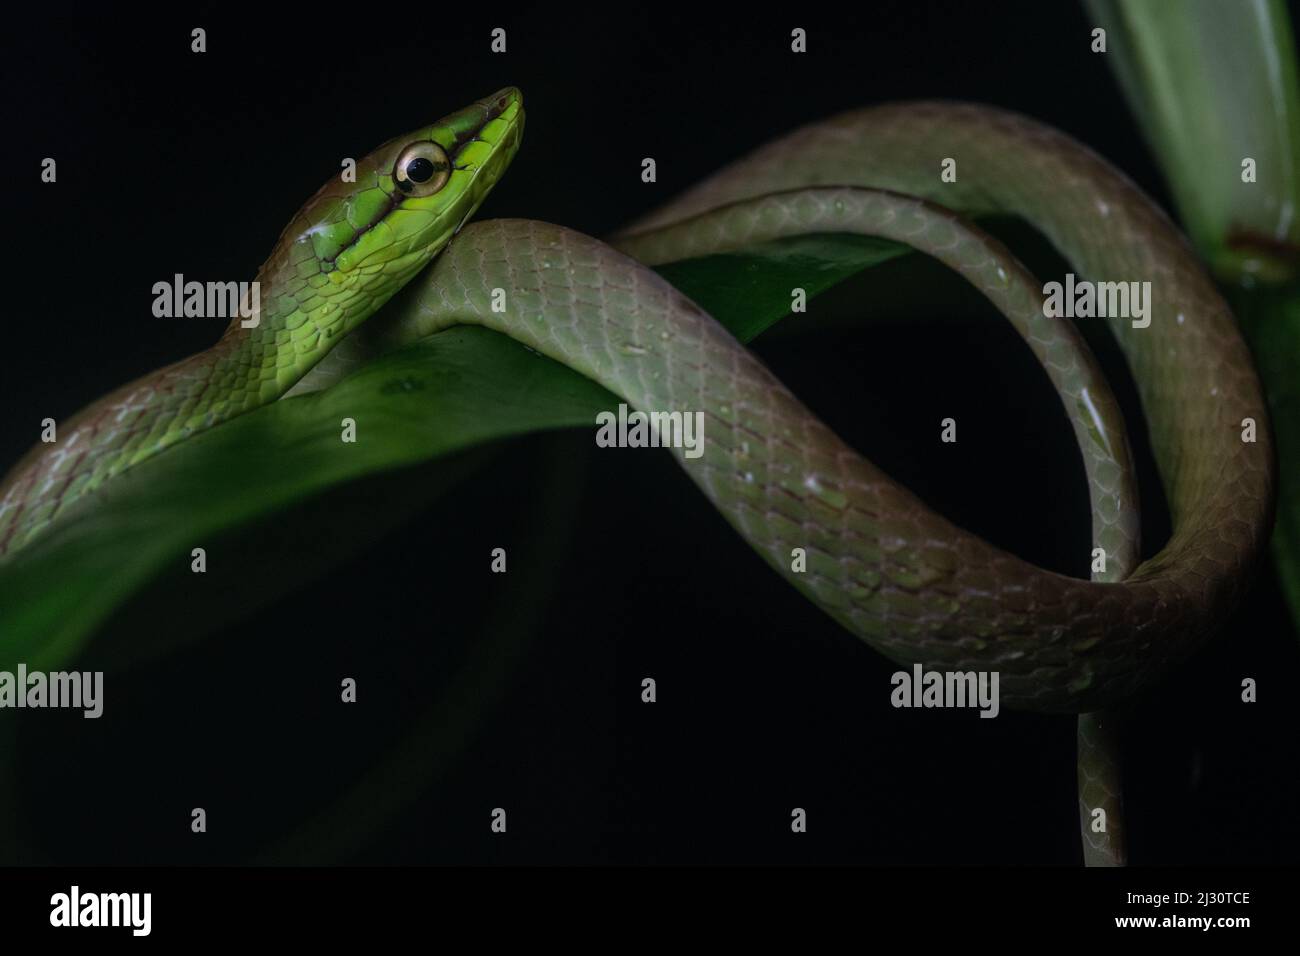 Oxybelis brevirostris, serpent de vigne de Cope, de la forêt équatoriale équatorienne dans la province d'El Oro, Équateur, Amérique du Sud. Banque D'Images